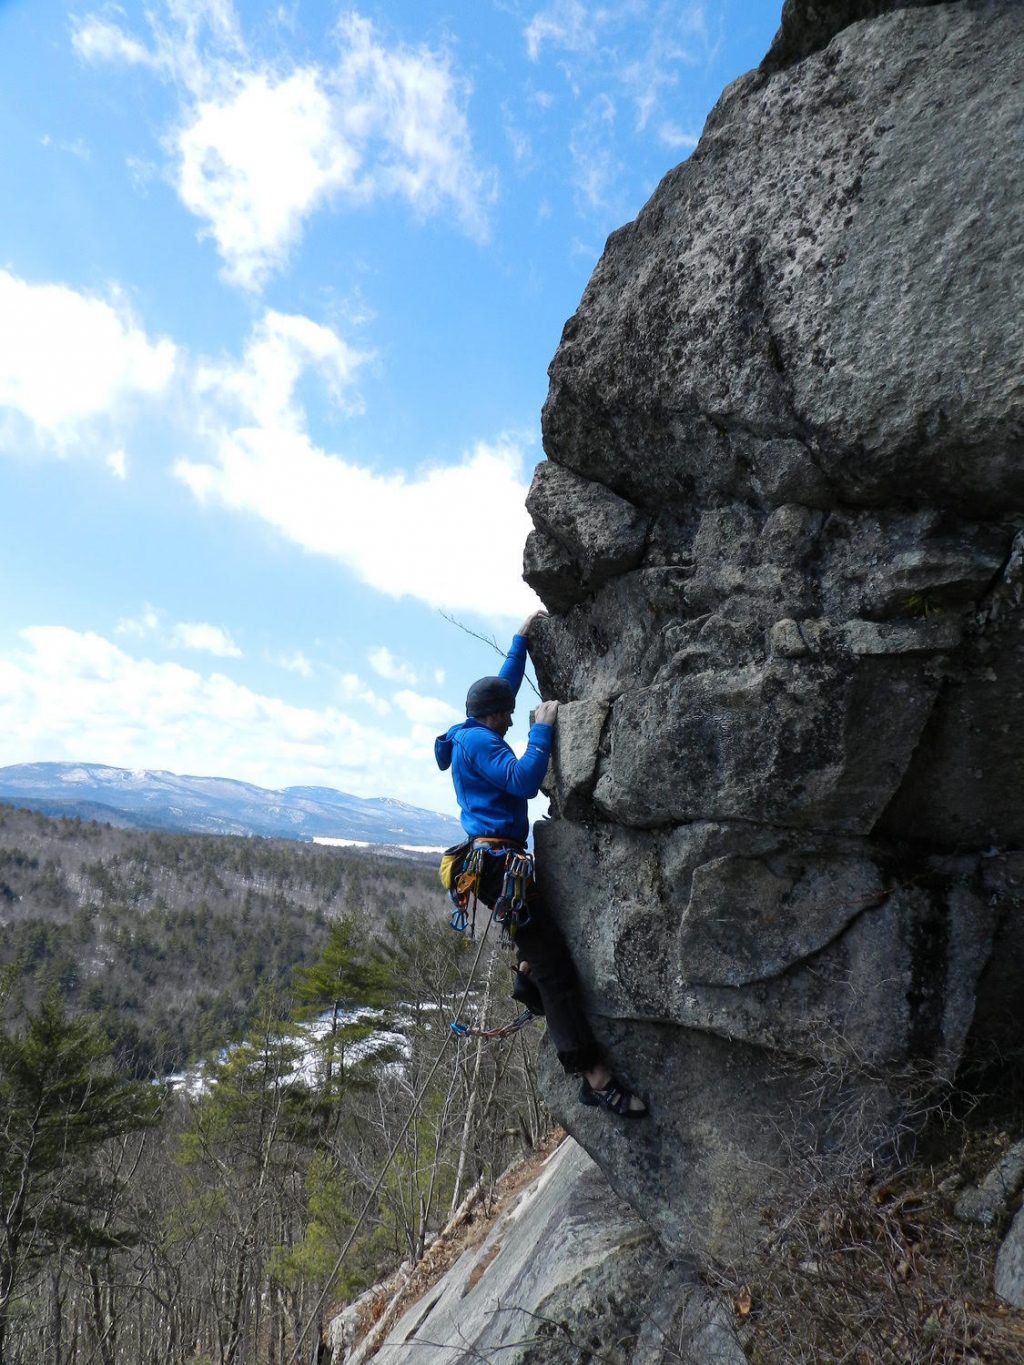 Climbing Longstack Precipice a lesser-known NH climbing destination 